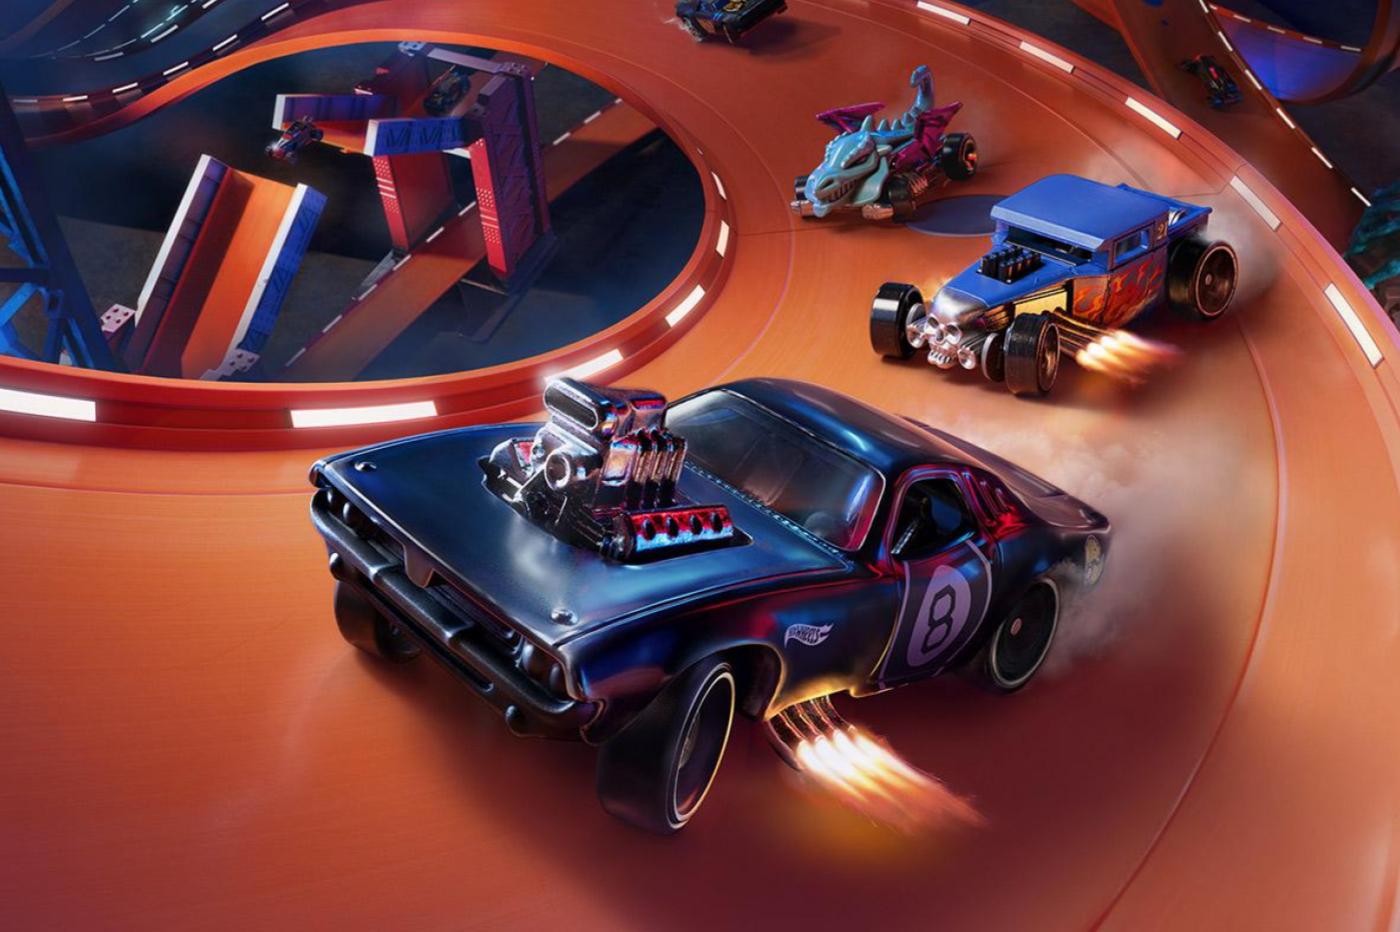 Image promotionnelle du jeu Hot Wheels Unleashed montrant des voitures faisant la course sur un parcours en plastique orange